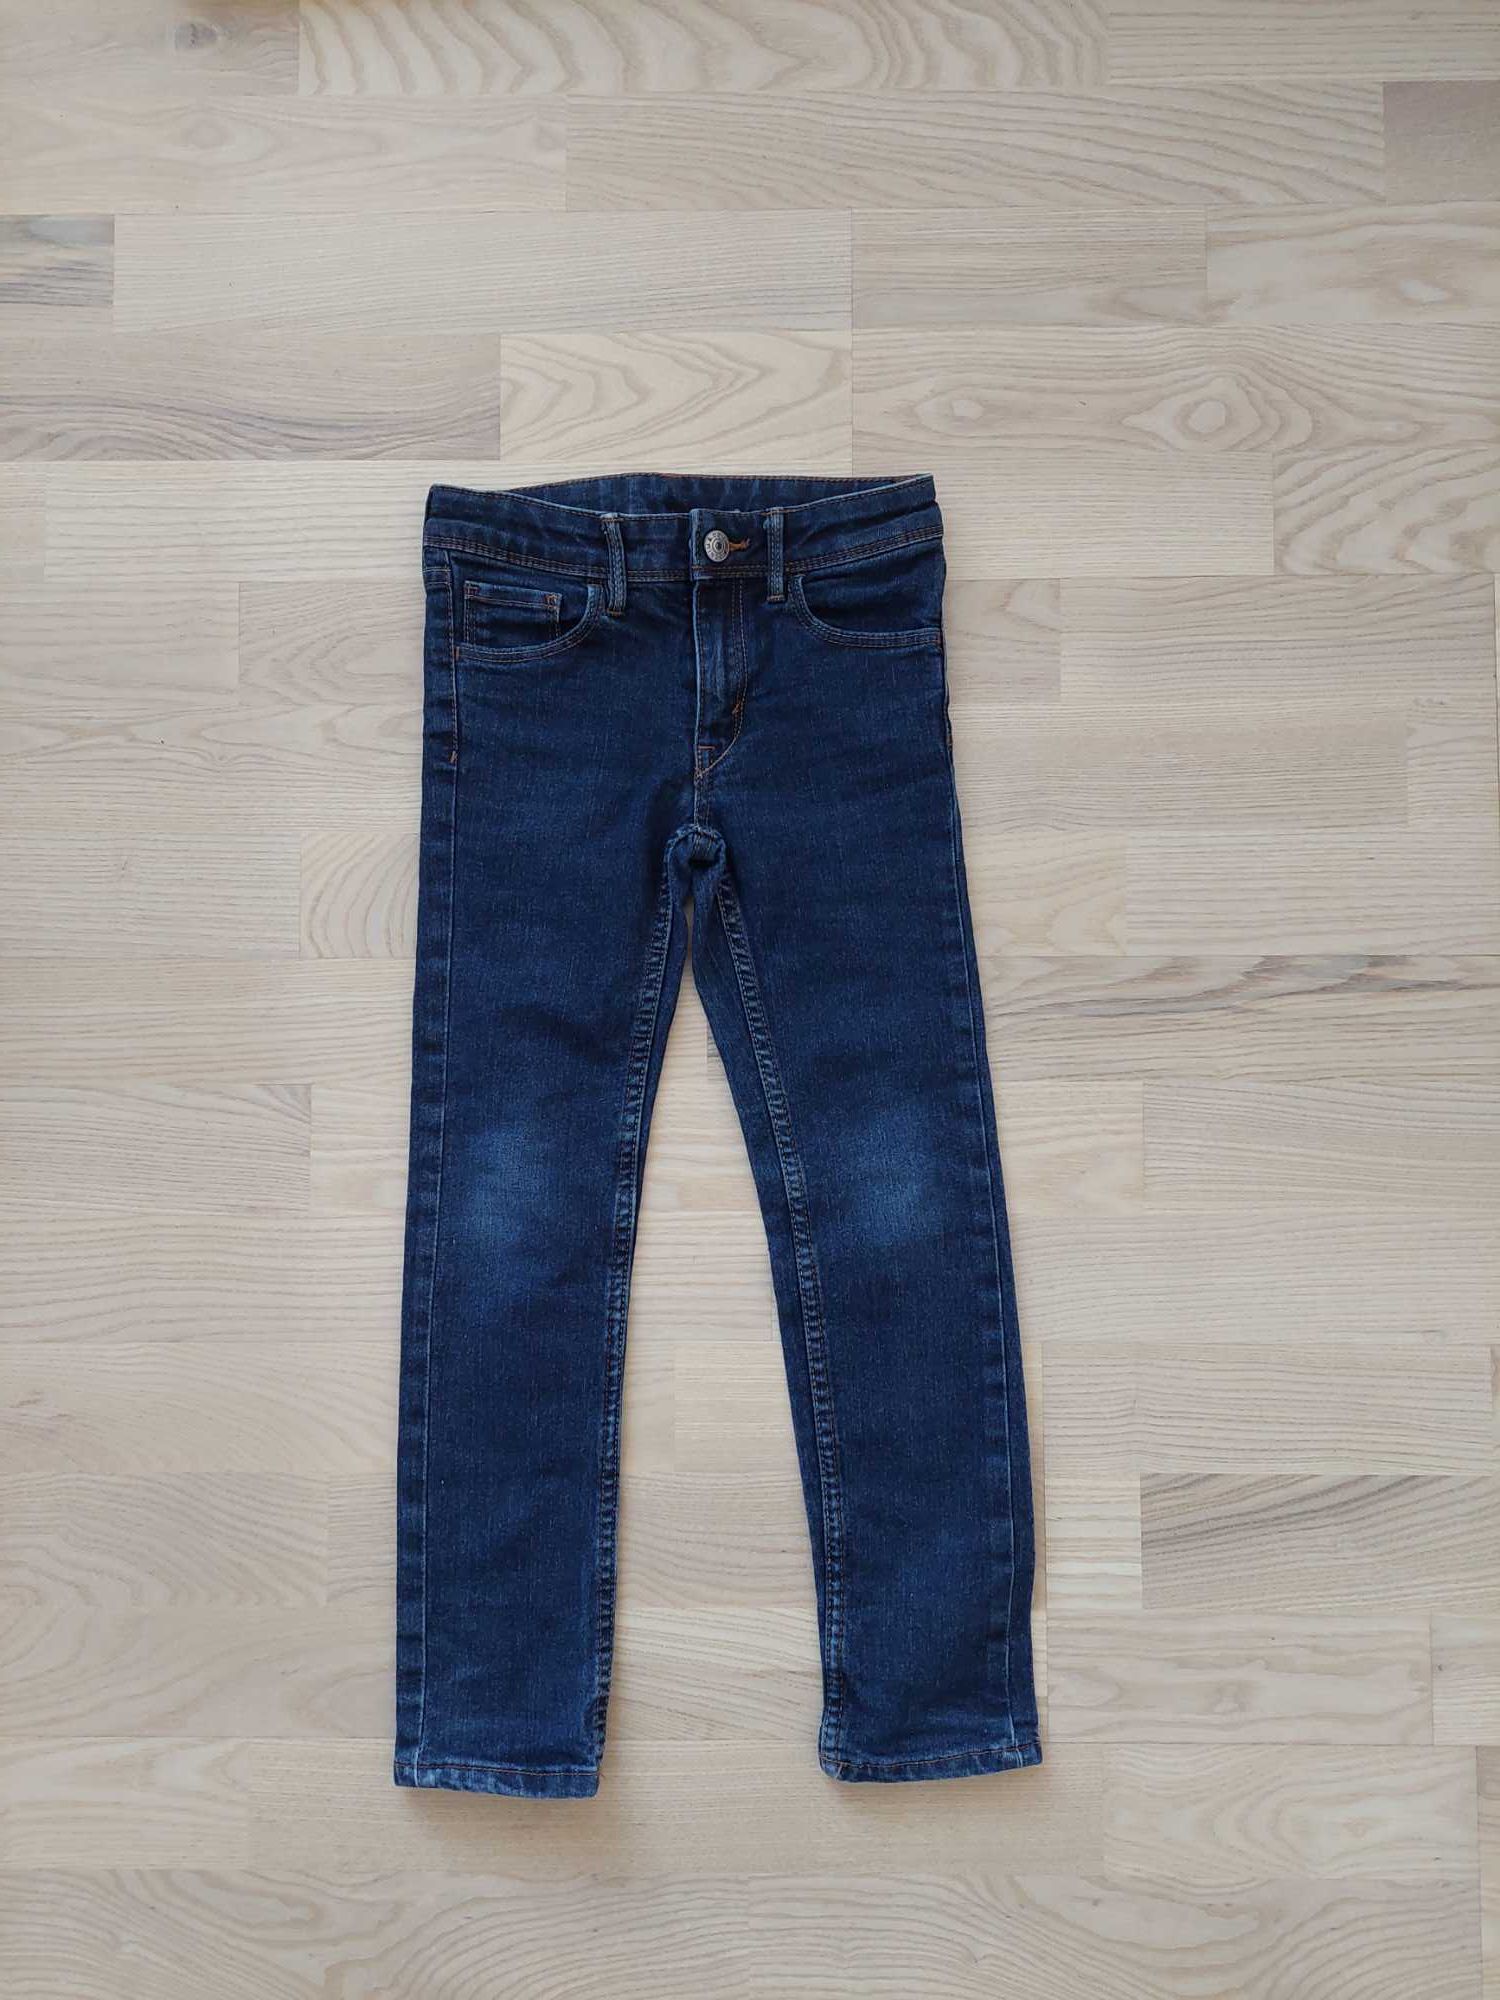 Jeansy 116 H&M spodnie jeansowe HM slim fit